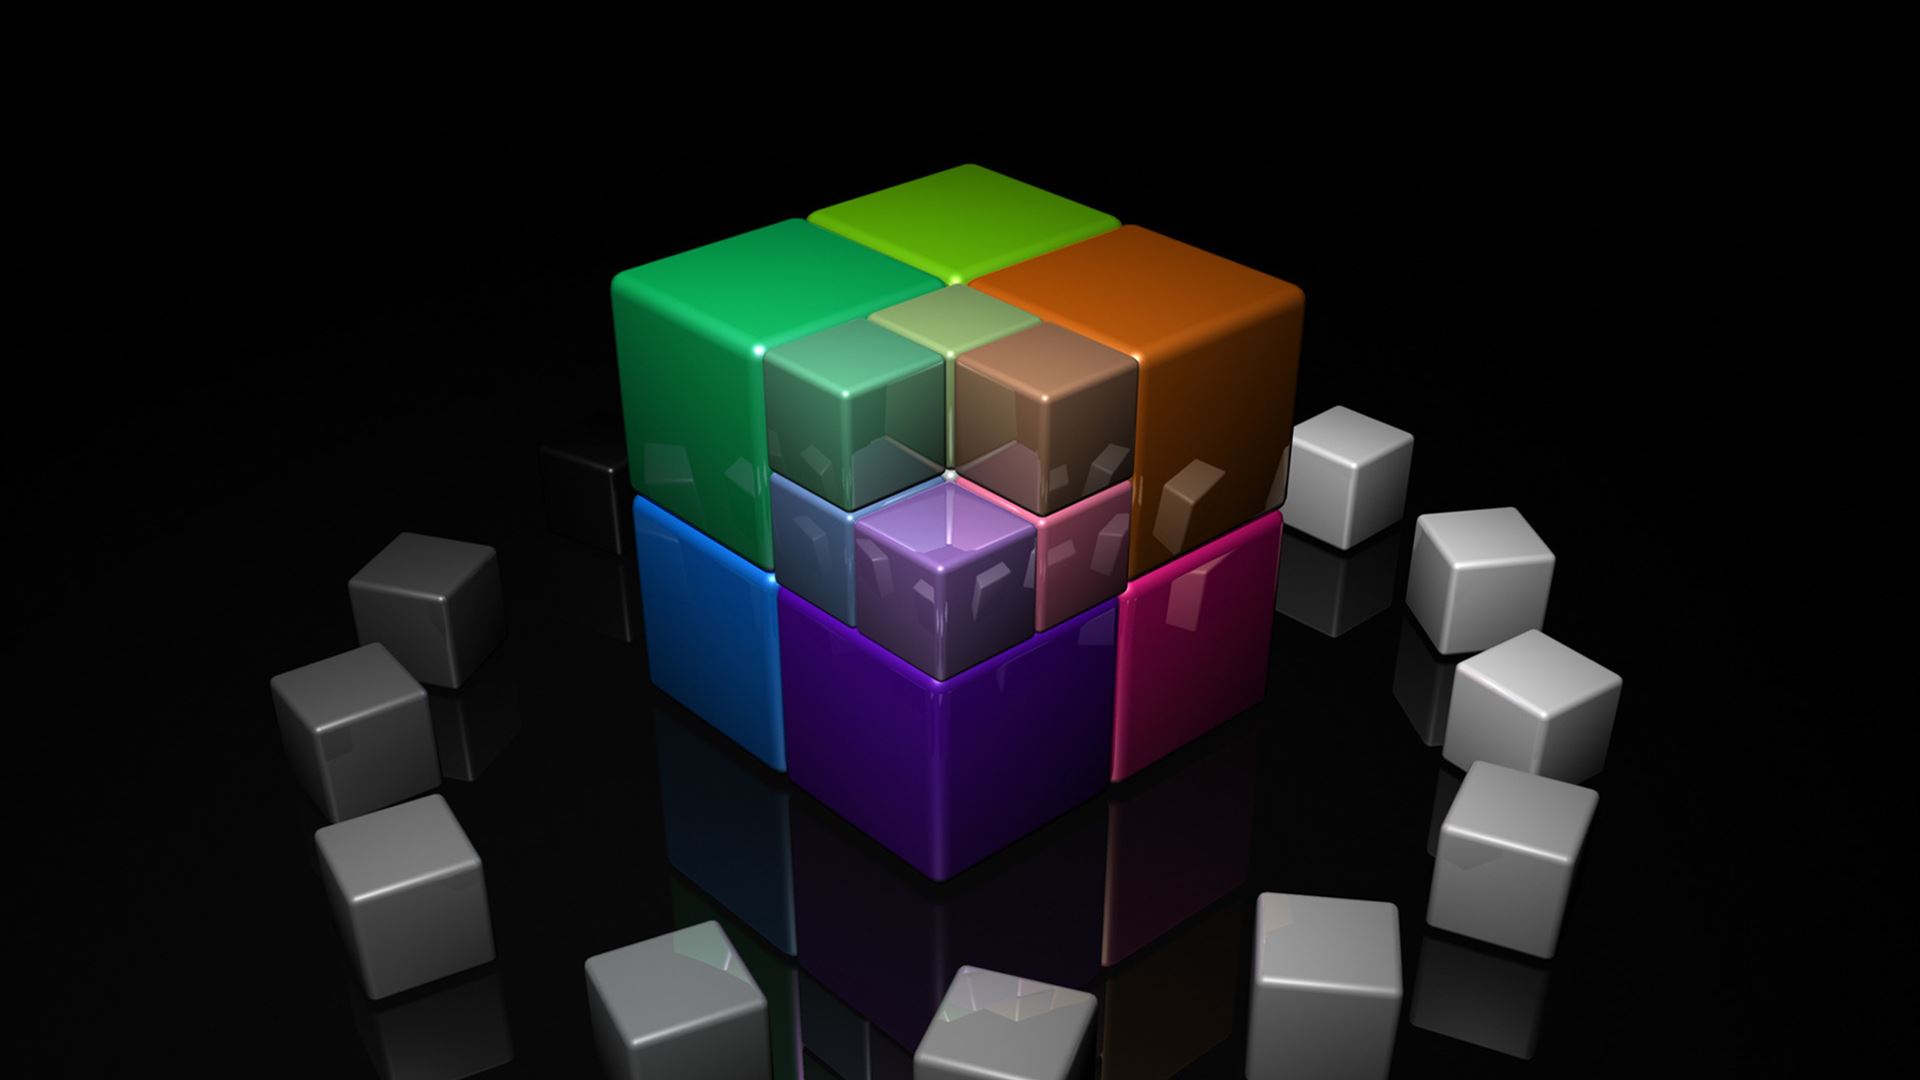 Colored Cubes 3d iPad Air wallpaper 